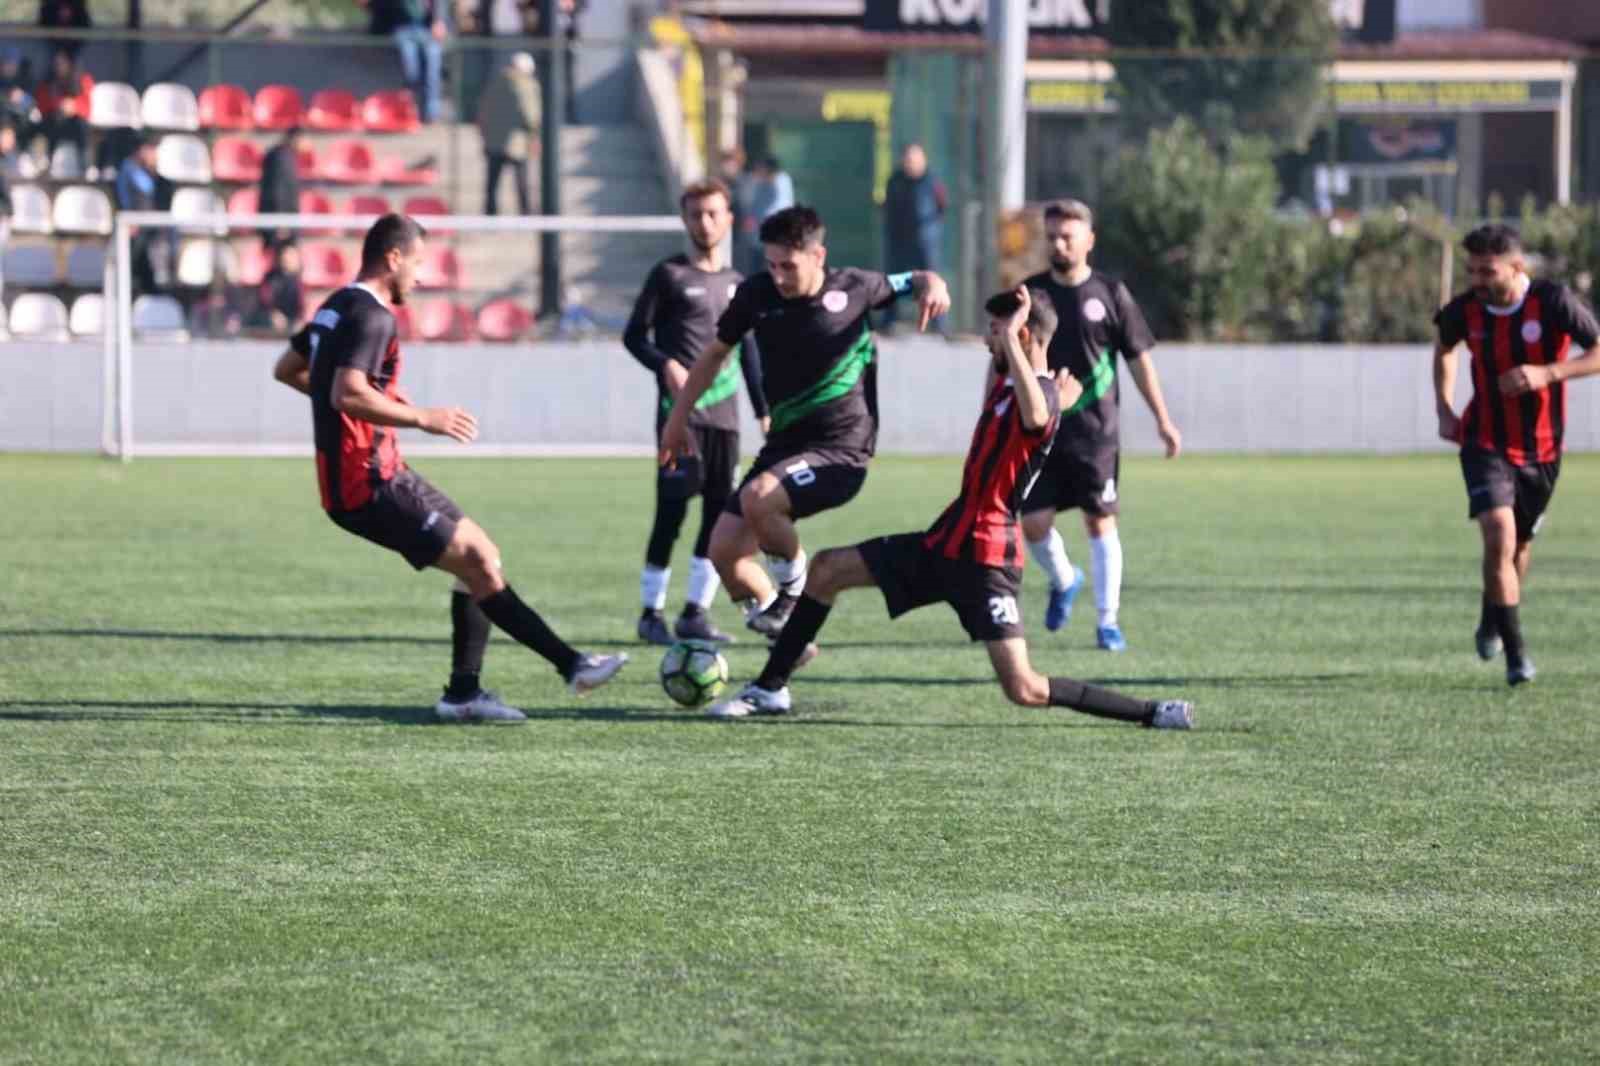 Yurtlar arası futbol turnuvası Denizli’de başlıyor